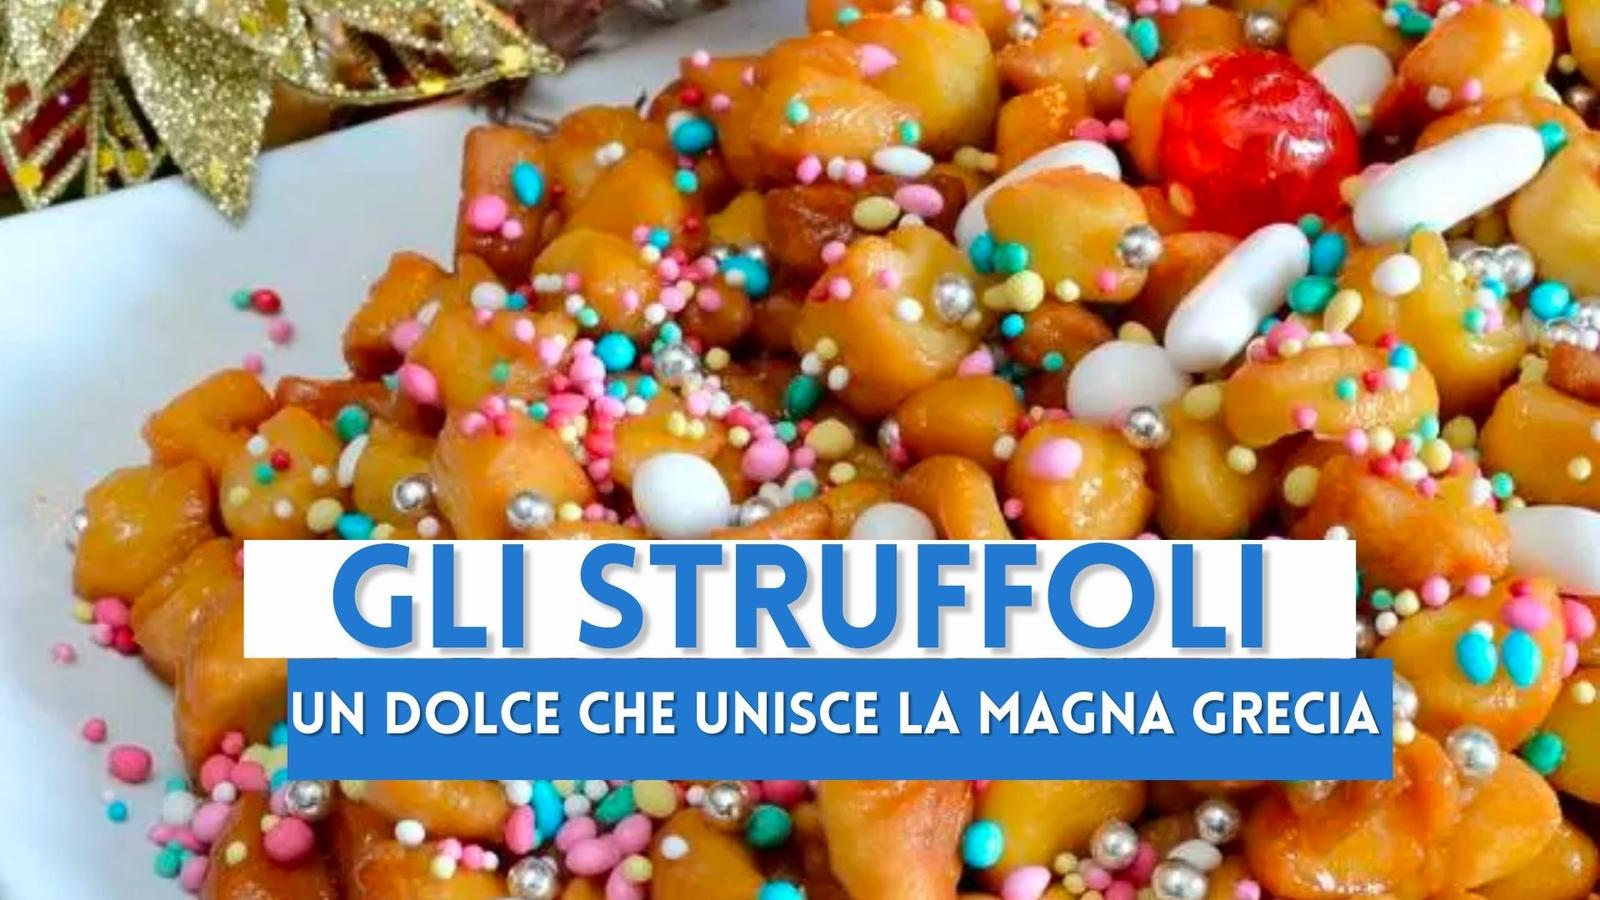 Gli Struffoli napoletani, storia e ricetta del dolce di Natale dalle origini greche